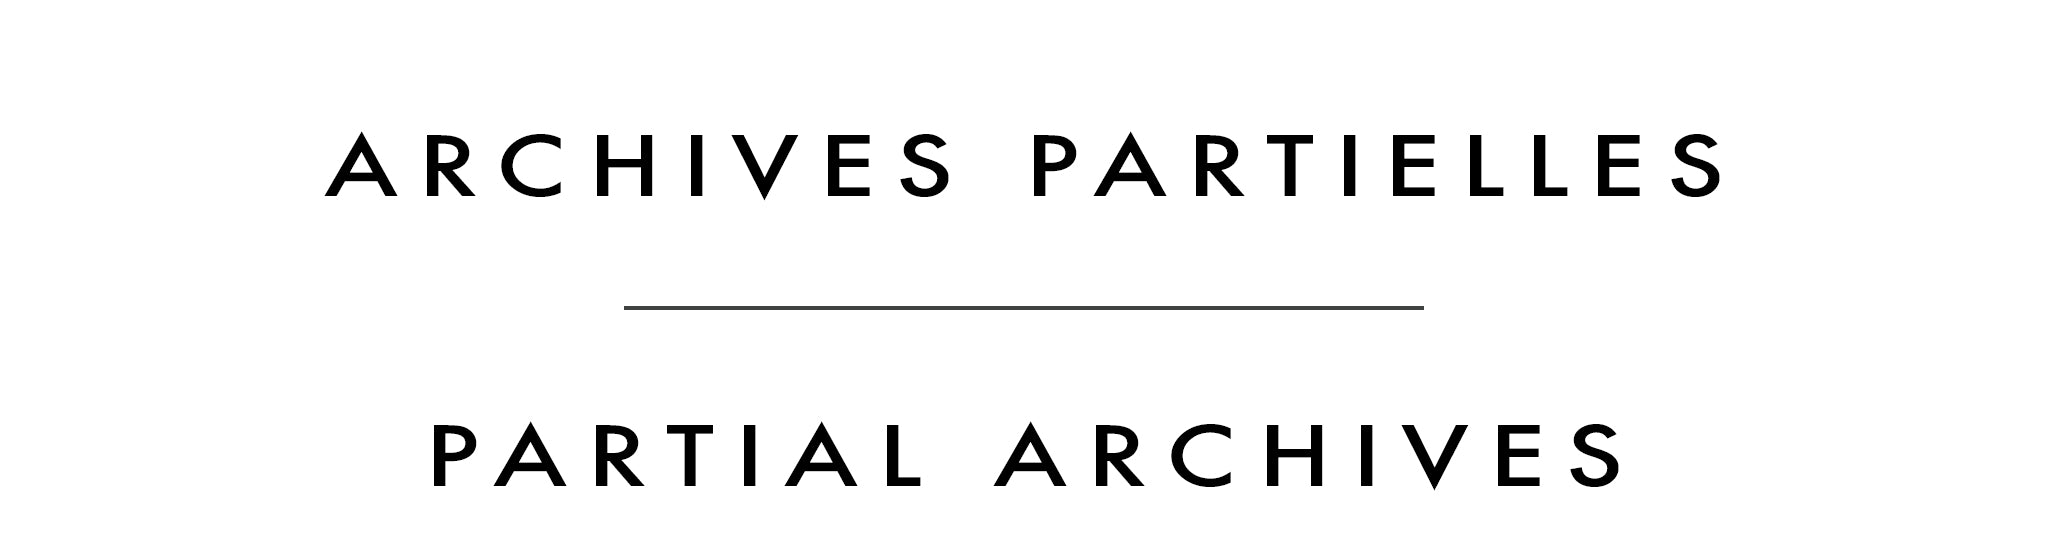 Archives partielles | Partial Archives | Stéphane Gagnon